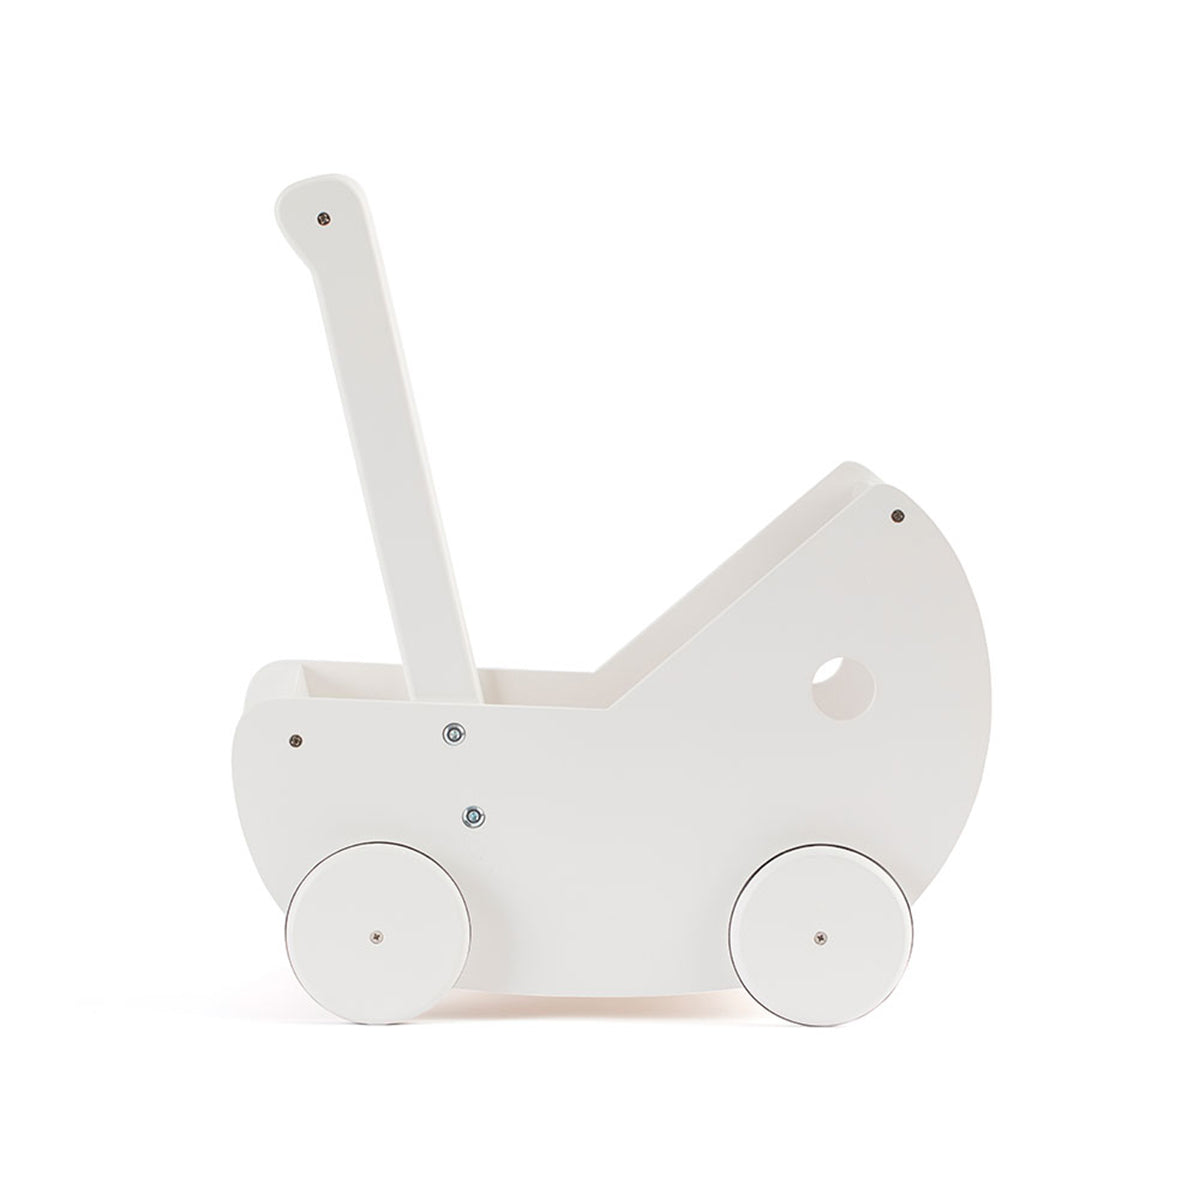 De Kid's Concept poppenwagen wit is perfect voor alle kinderen die dol zijn op vadertje en moedertje spelen. Met dit leuke wagentje kan jouw kindje heerlijk een rondje wandelen met de pop. VanZus.